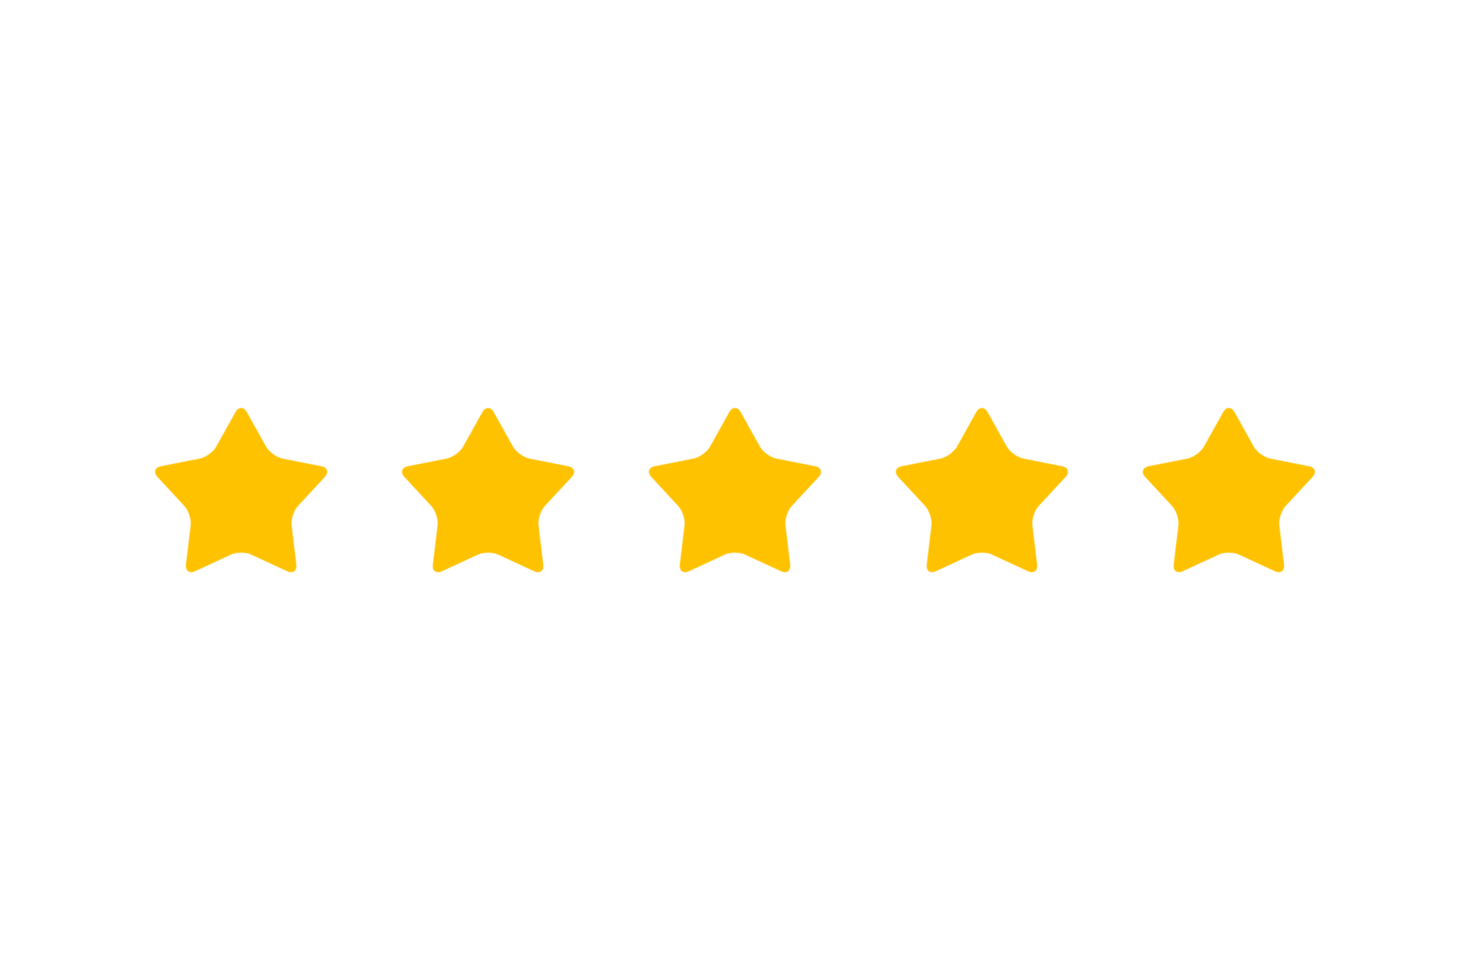 5 star review for kratom